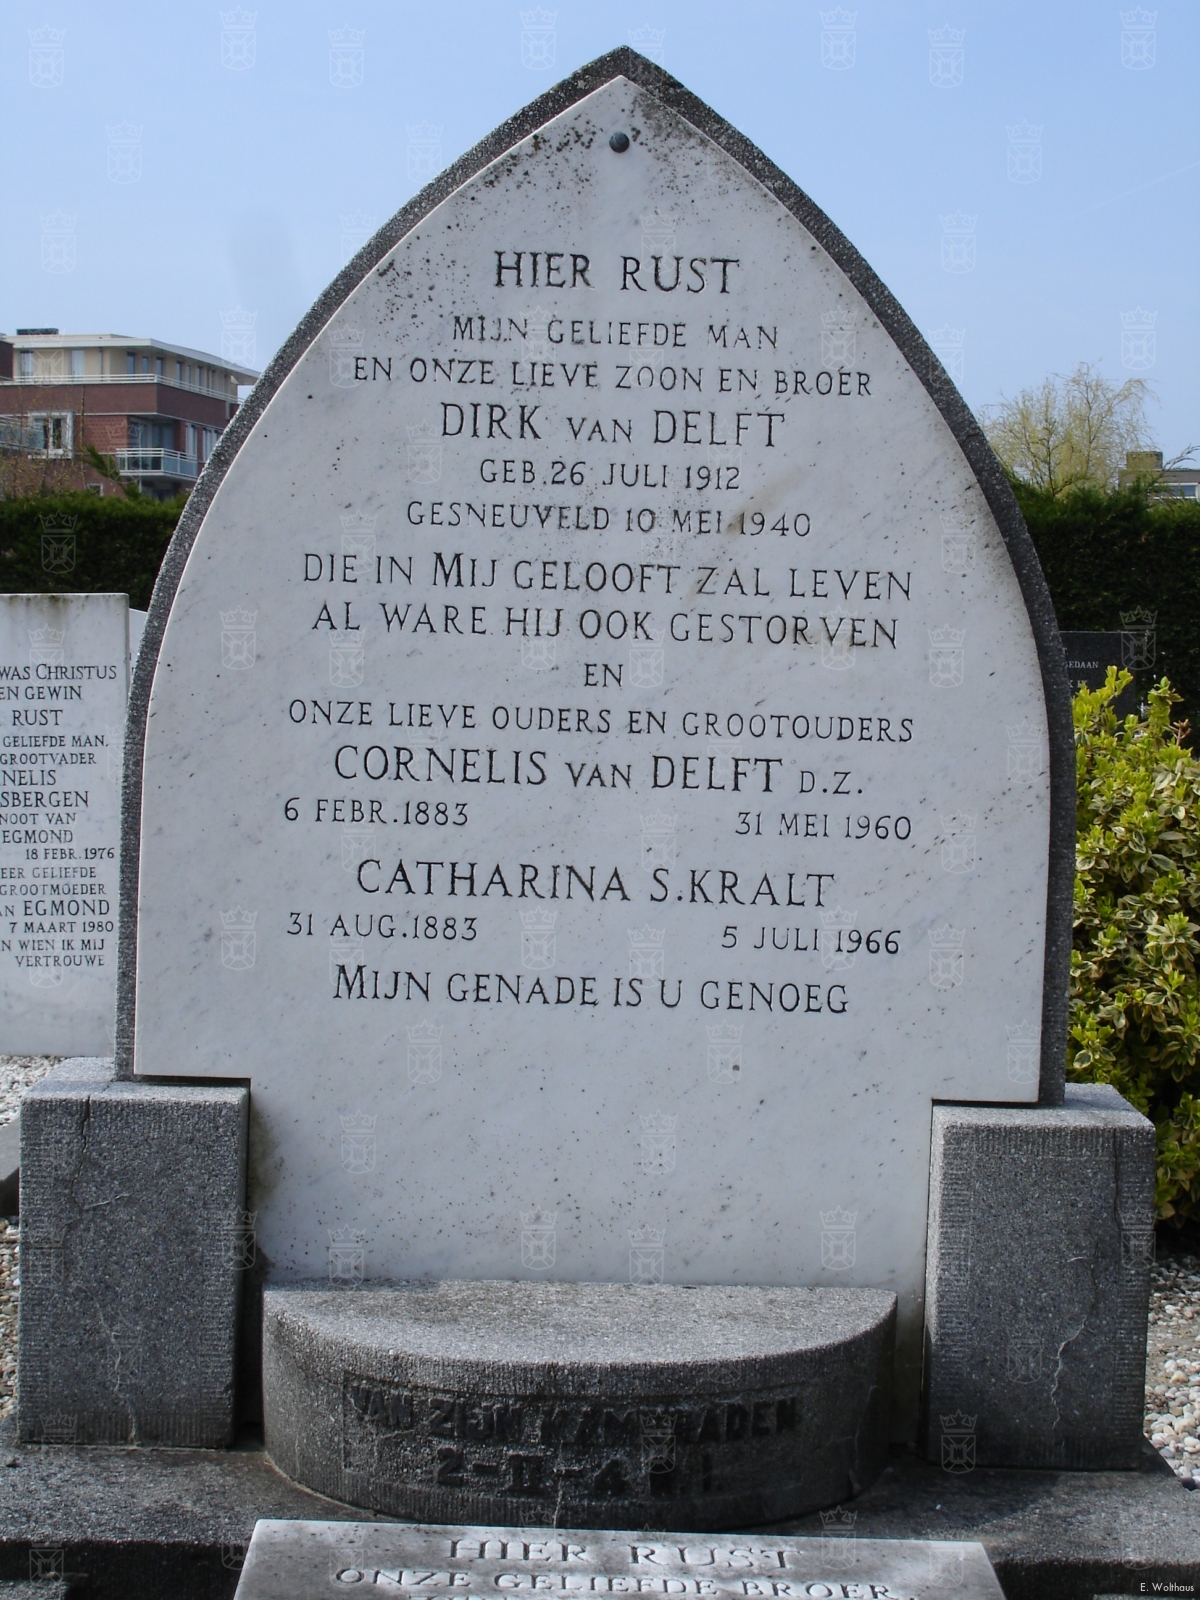 Het graf van Dirk van Delft op de Gereformeerde begraafplaats aan de Sandtlaan.